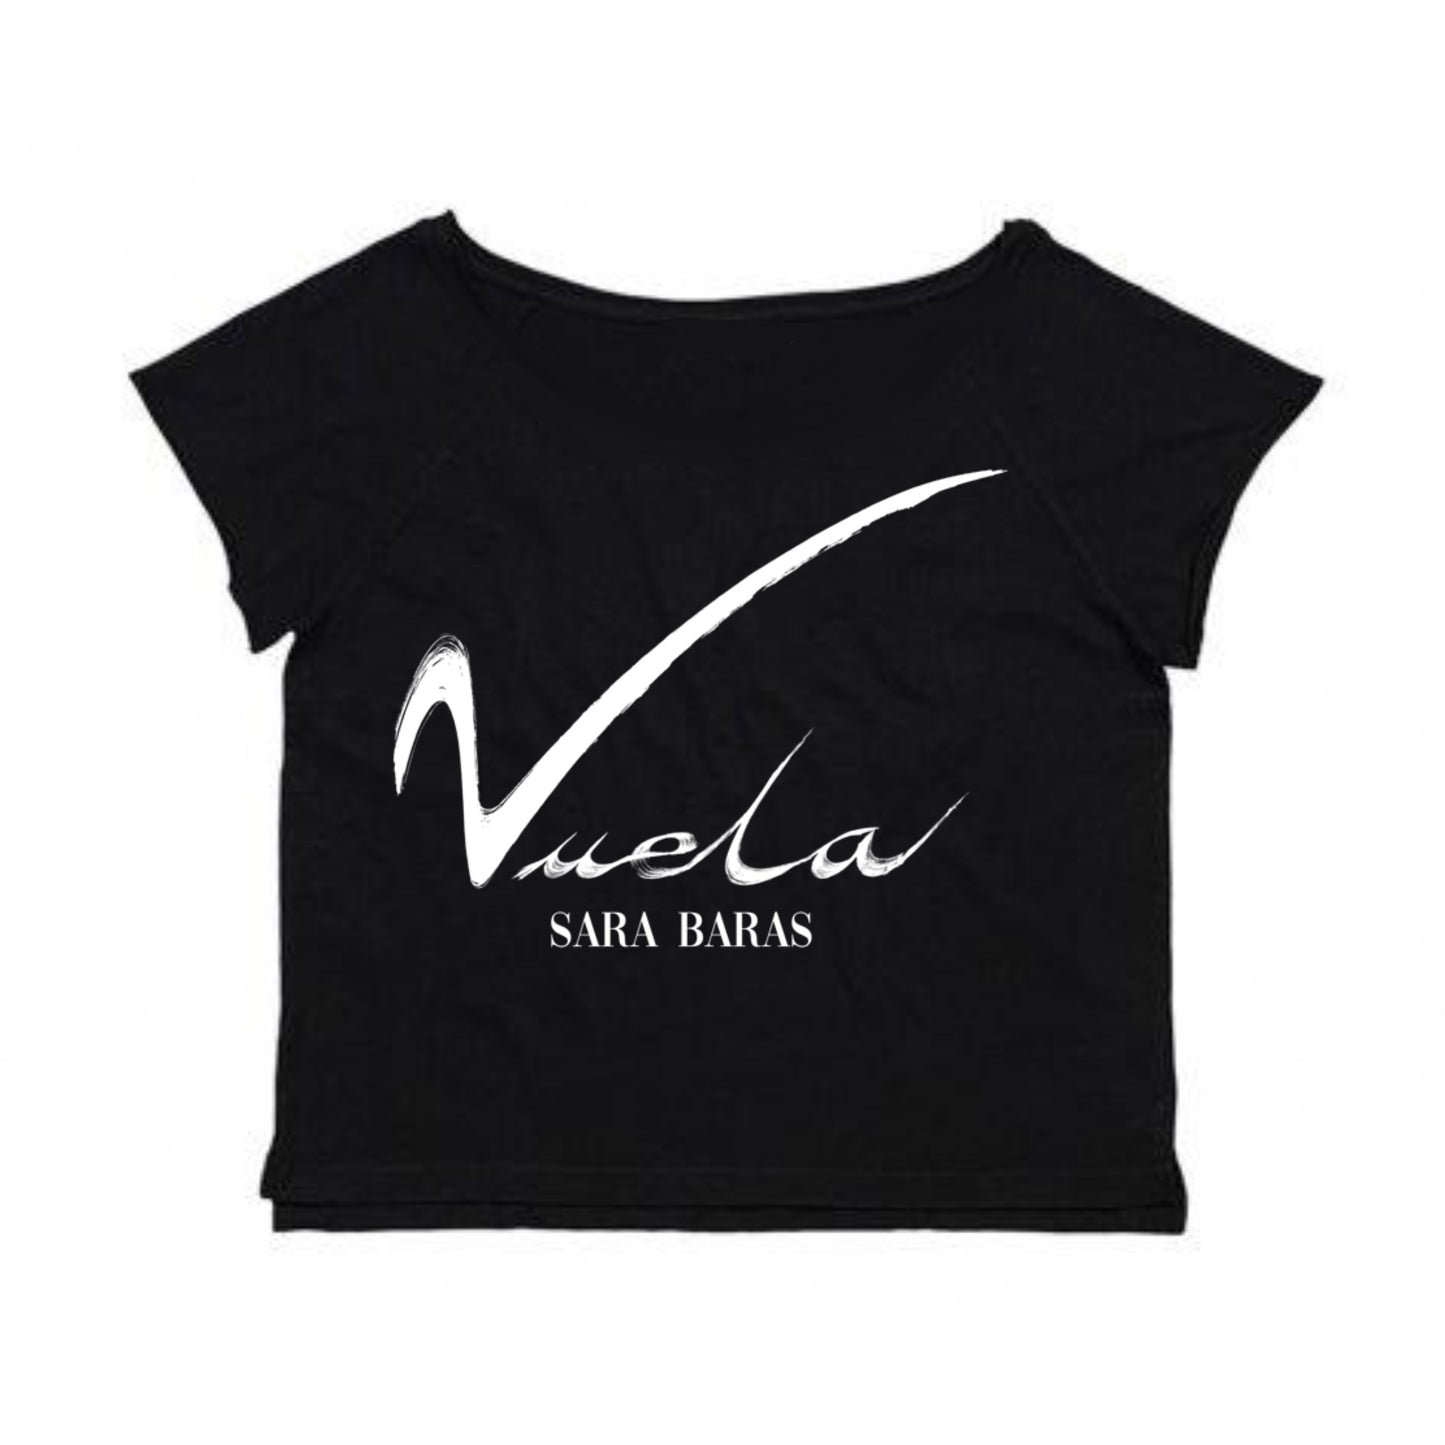 Camiseta de ensayo "Vuela"